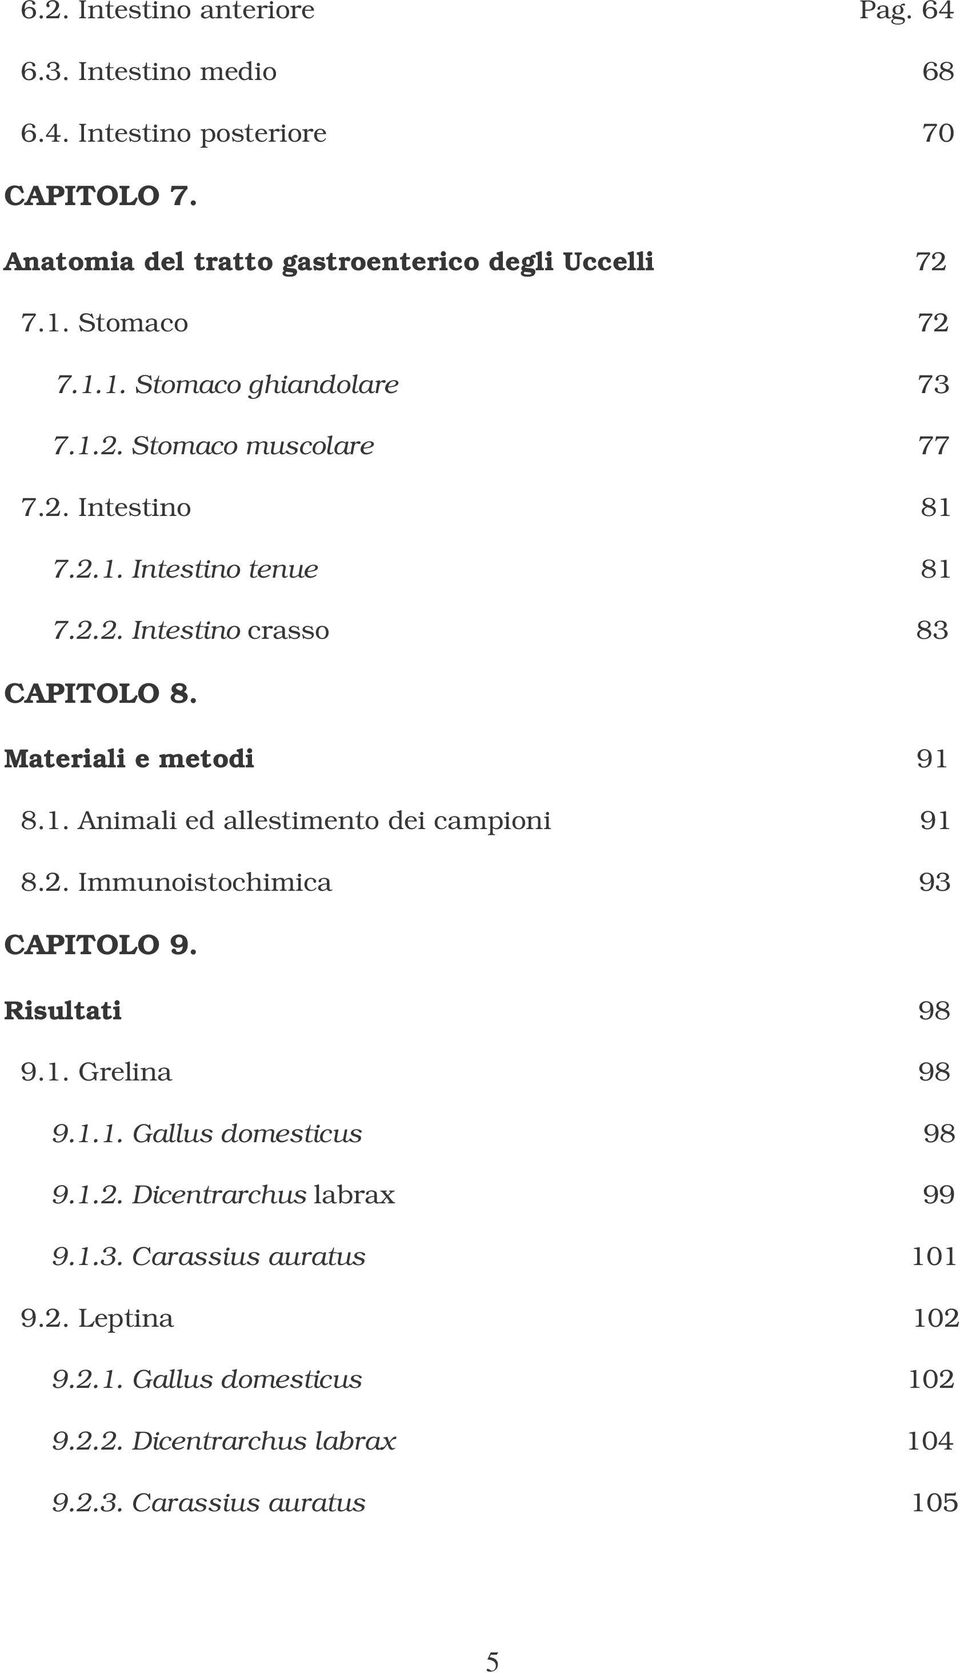 Materiali e metodi 91 8.1. Animali ed allestimento dei campioni 91 8.2. Immunoistochimica 93 CAPITOLO 9. Risultati 98 9.1. Grelina 98 9.1.1. Gallus domesticus 98 9.